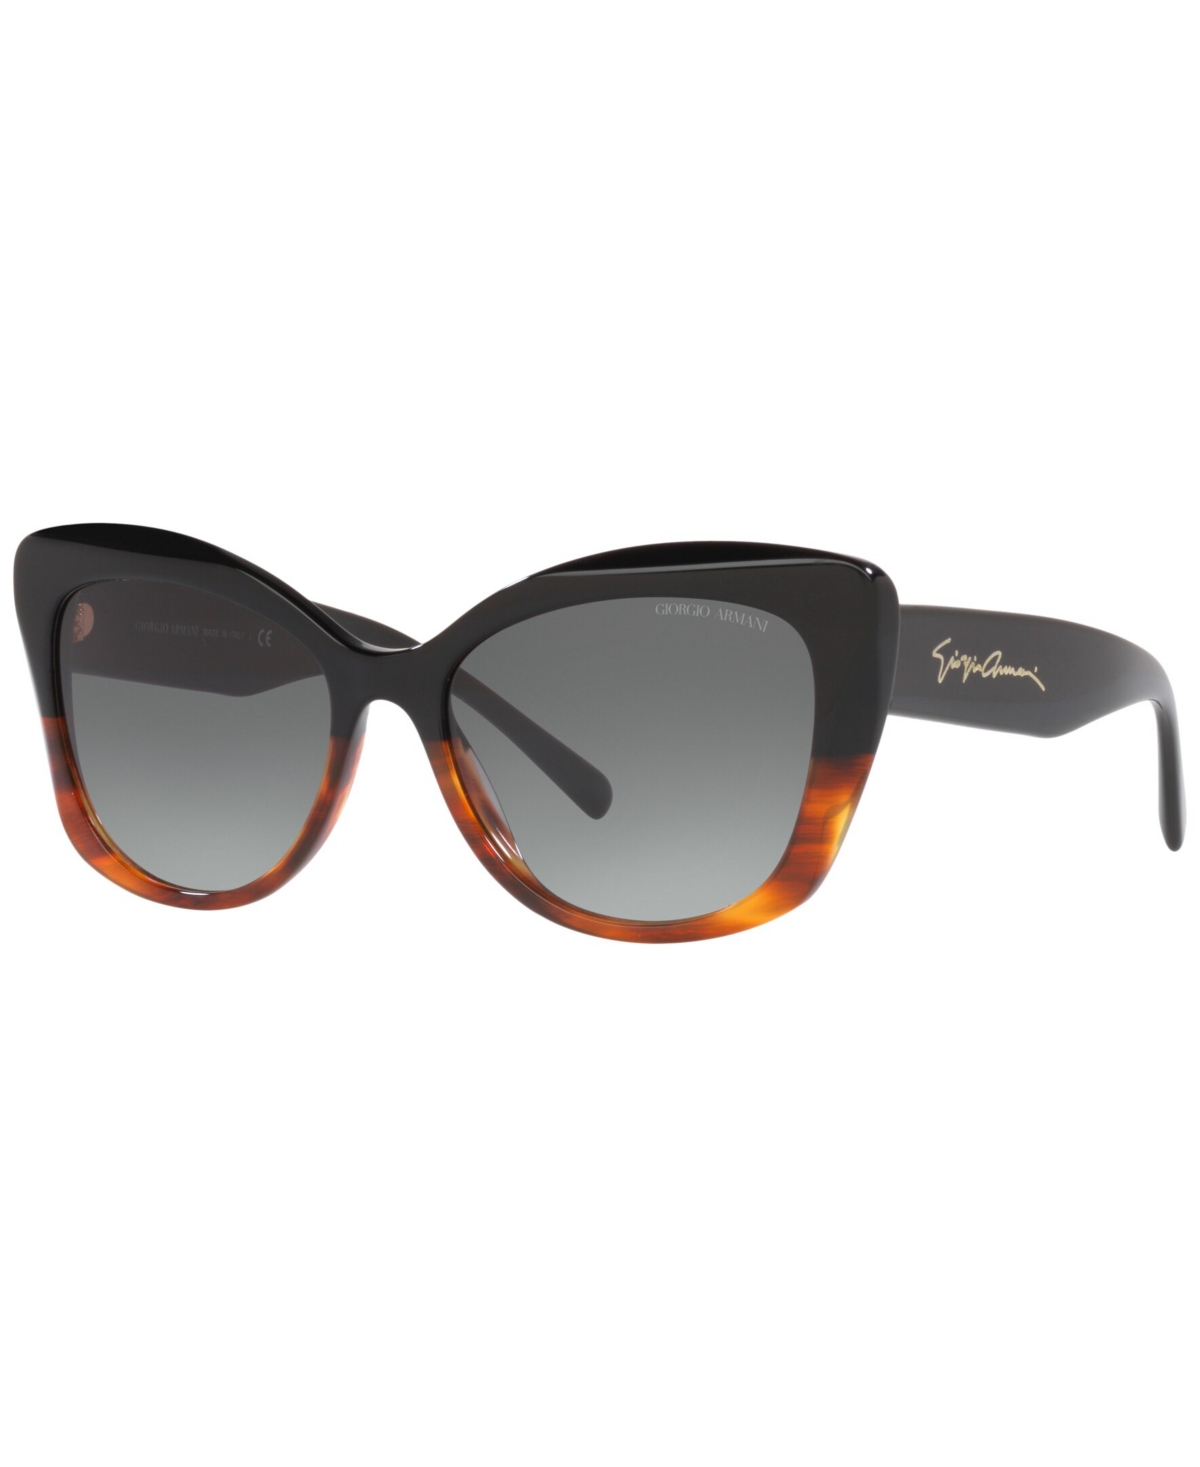 Giorgio Armani Women's Sunglasses, 56 In Black,striped Brown